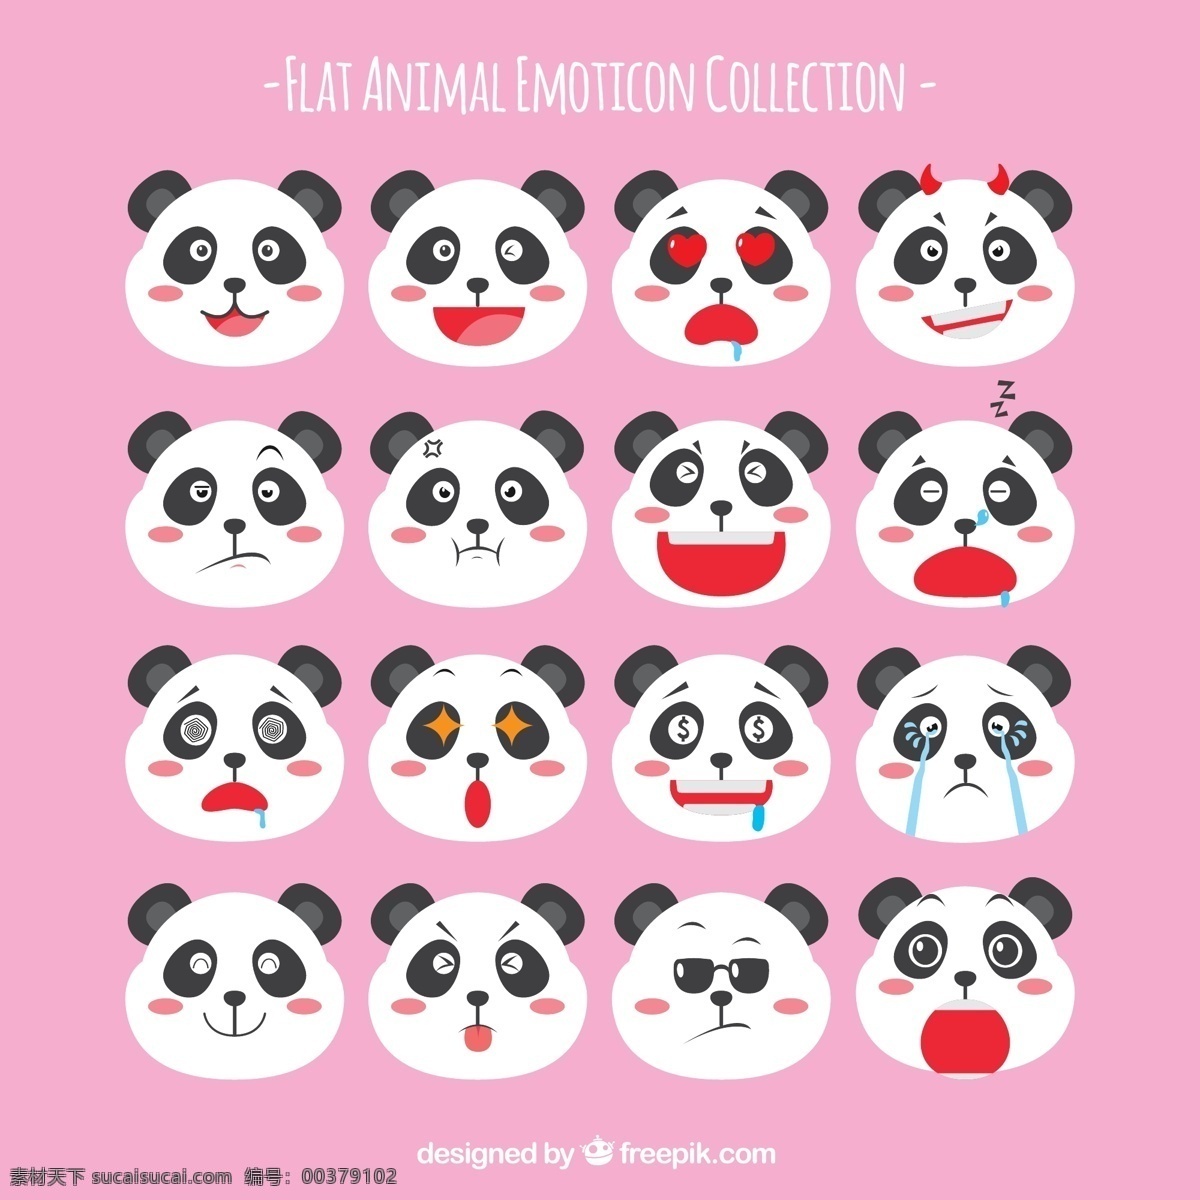 组 可爱 卡通 熊猫 头像 卡哇伊 矢量素材 动物 小动物 创意设计 简约 创意 元素 生物元素 动物元素